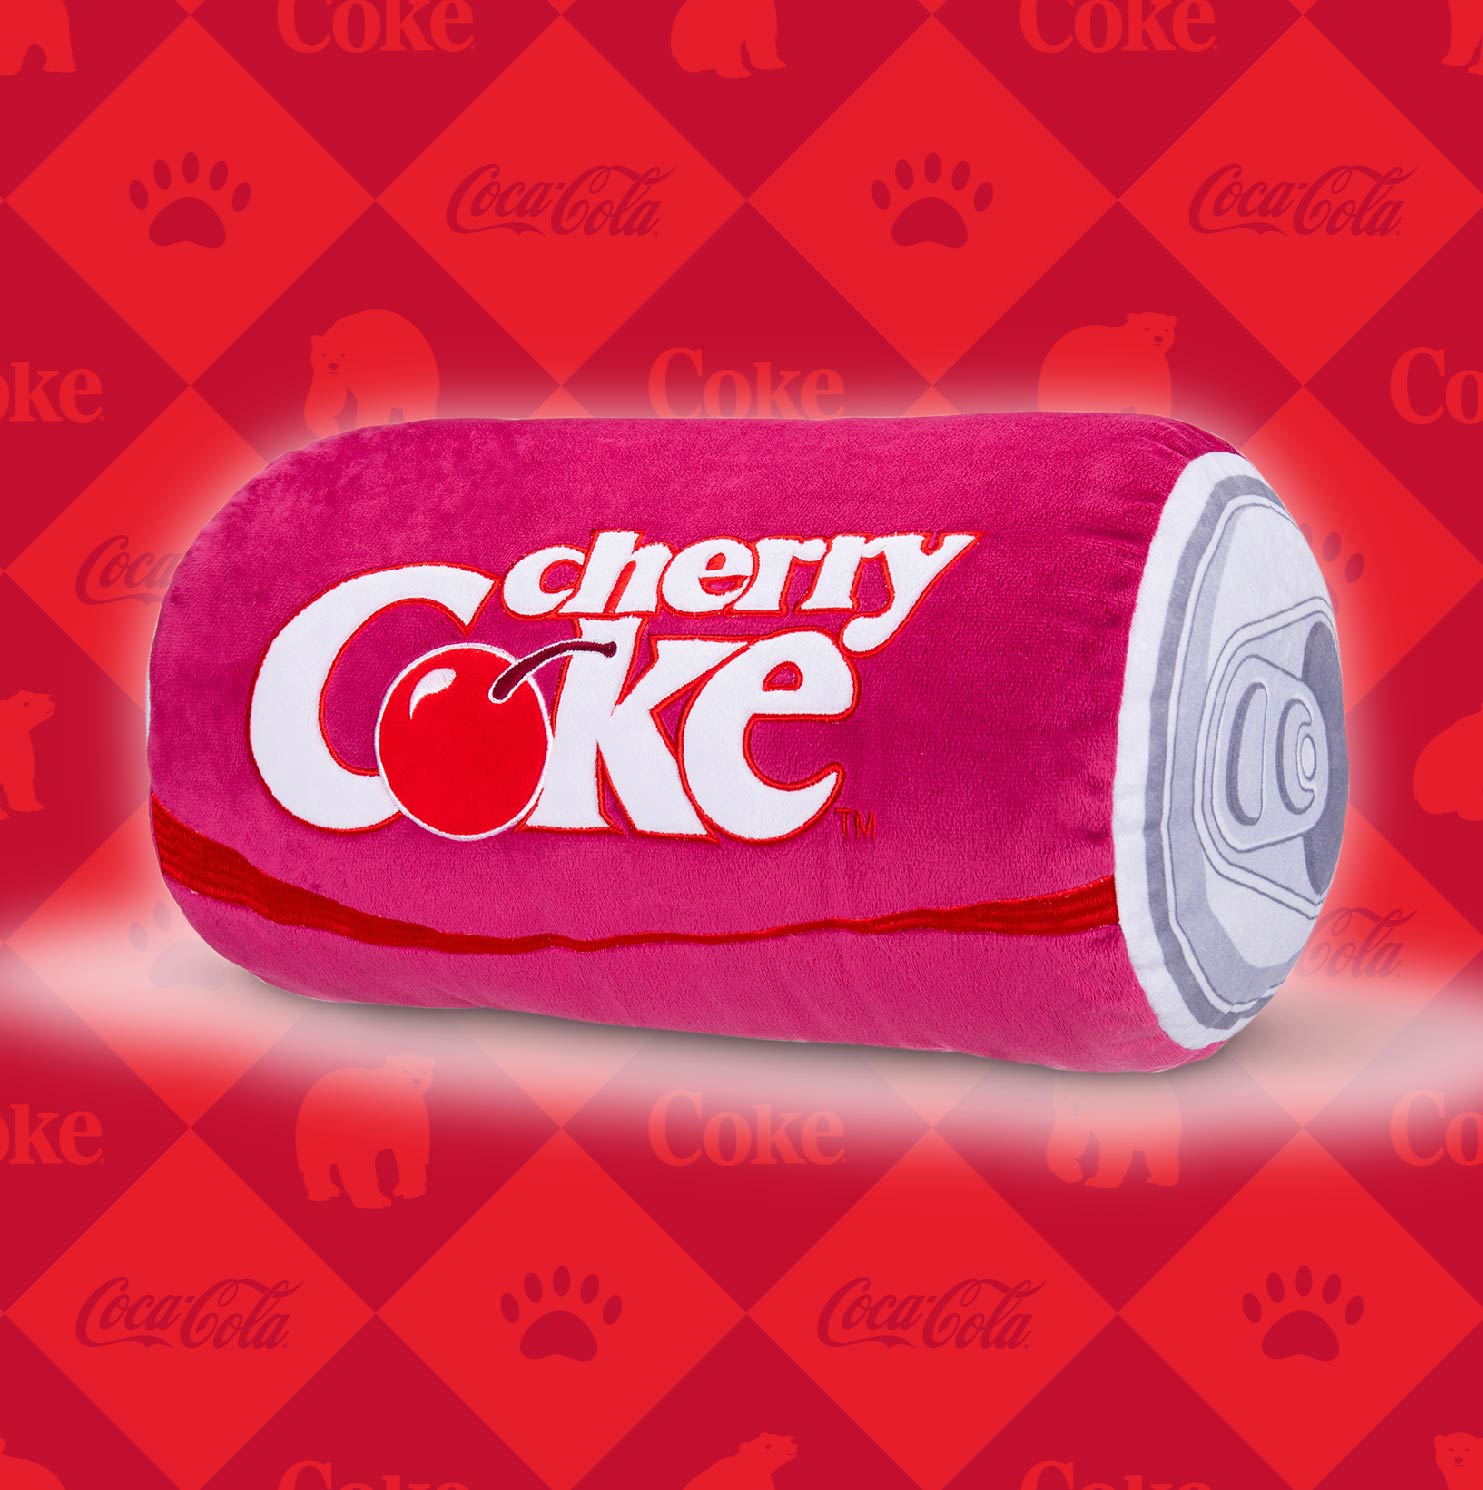 Coca Cola Brand Page Plush CanCherry